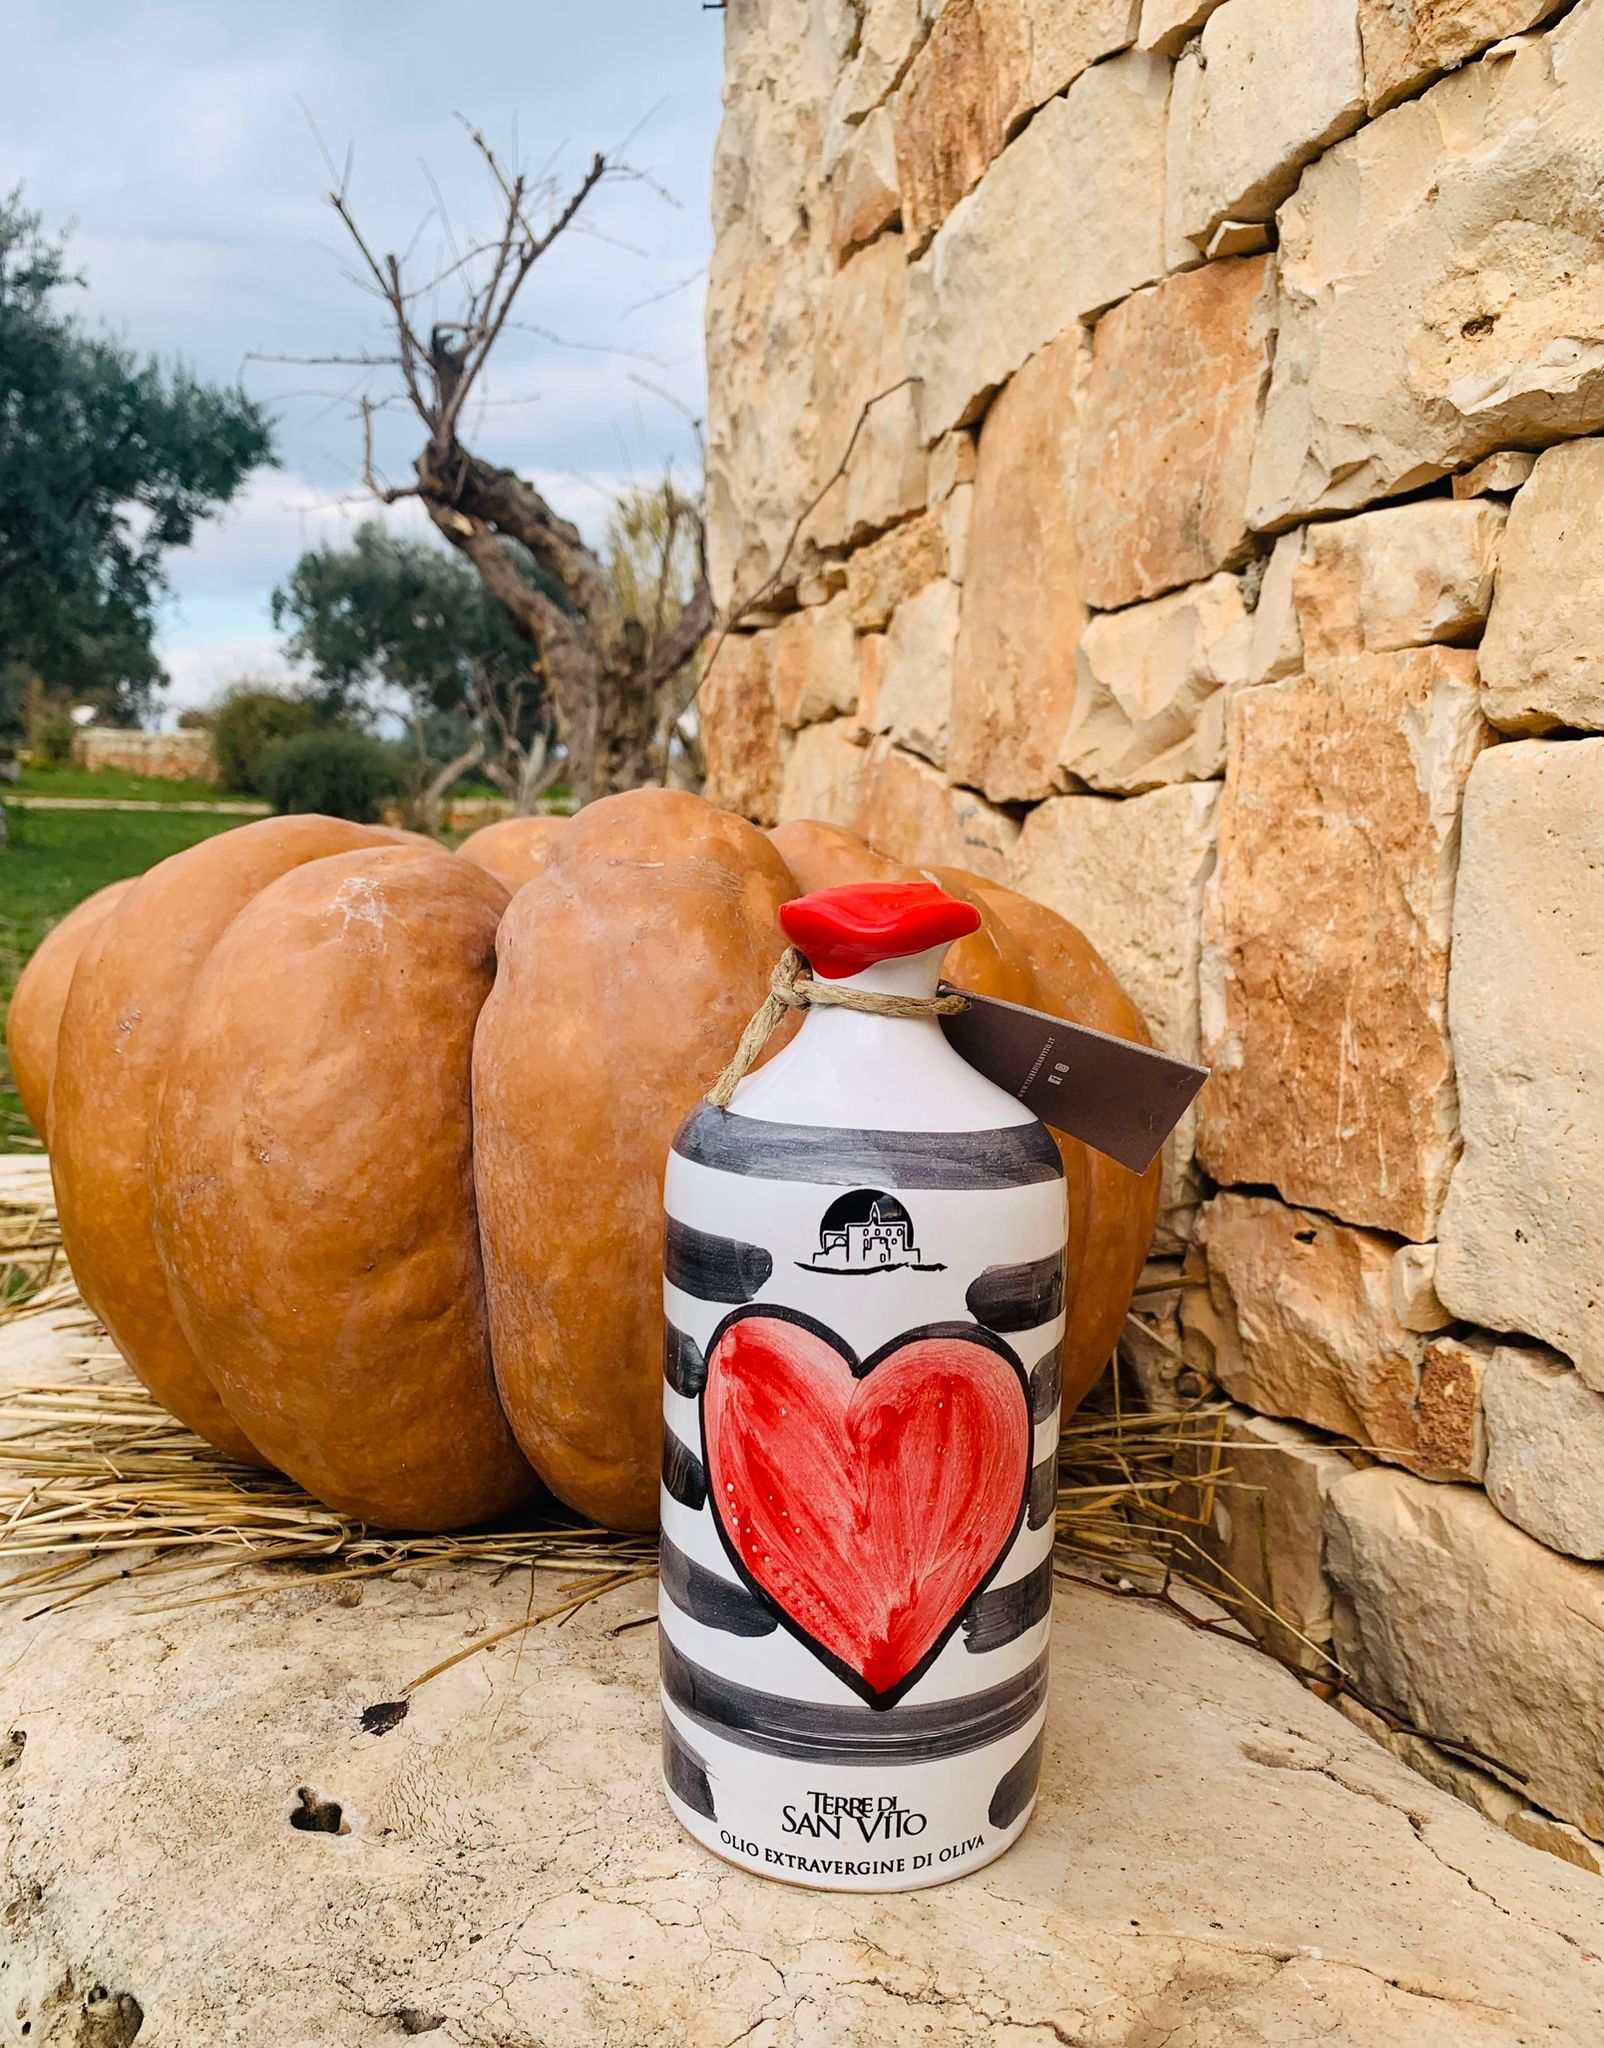 Love Heart Terrakottaglas – Enthält unser natives Olivenöl extra